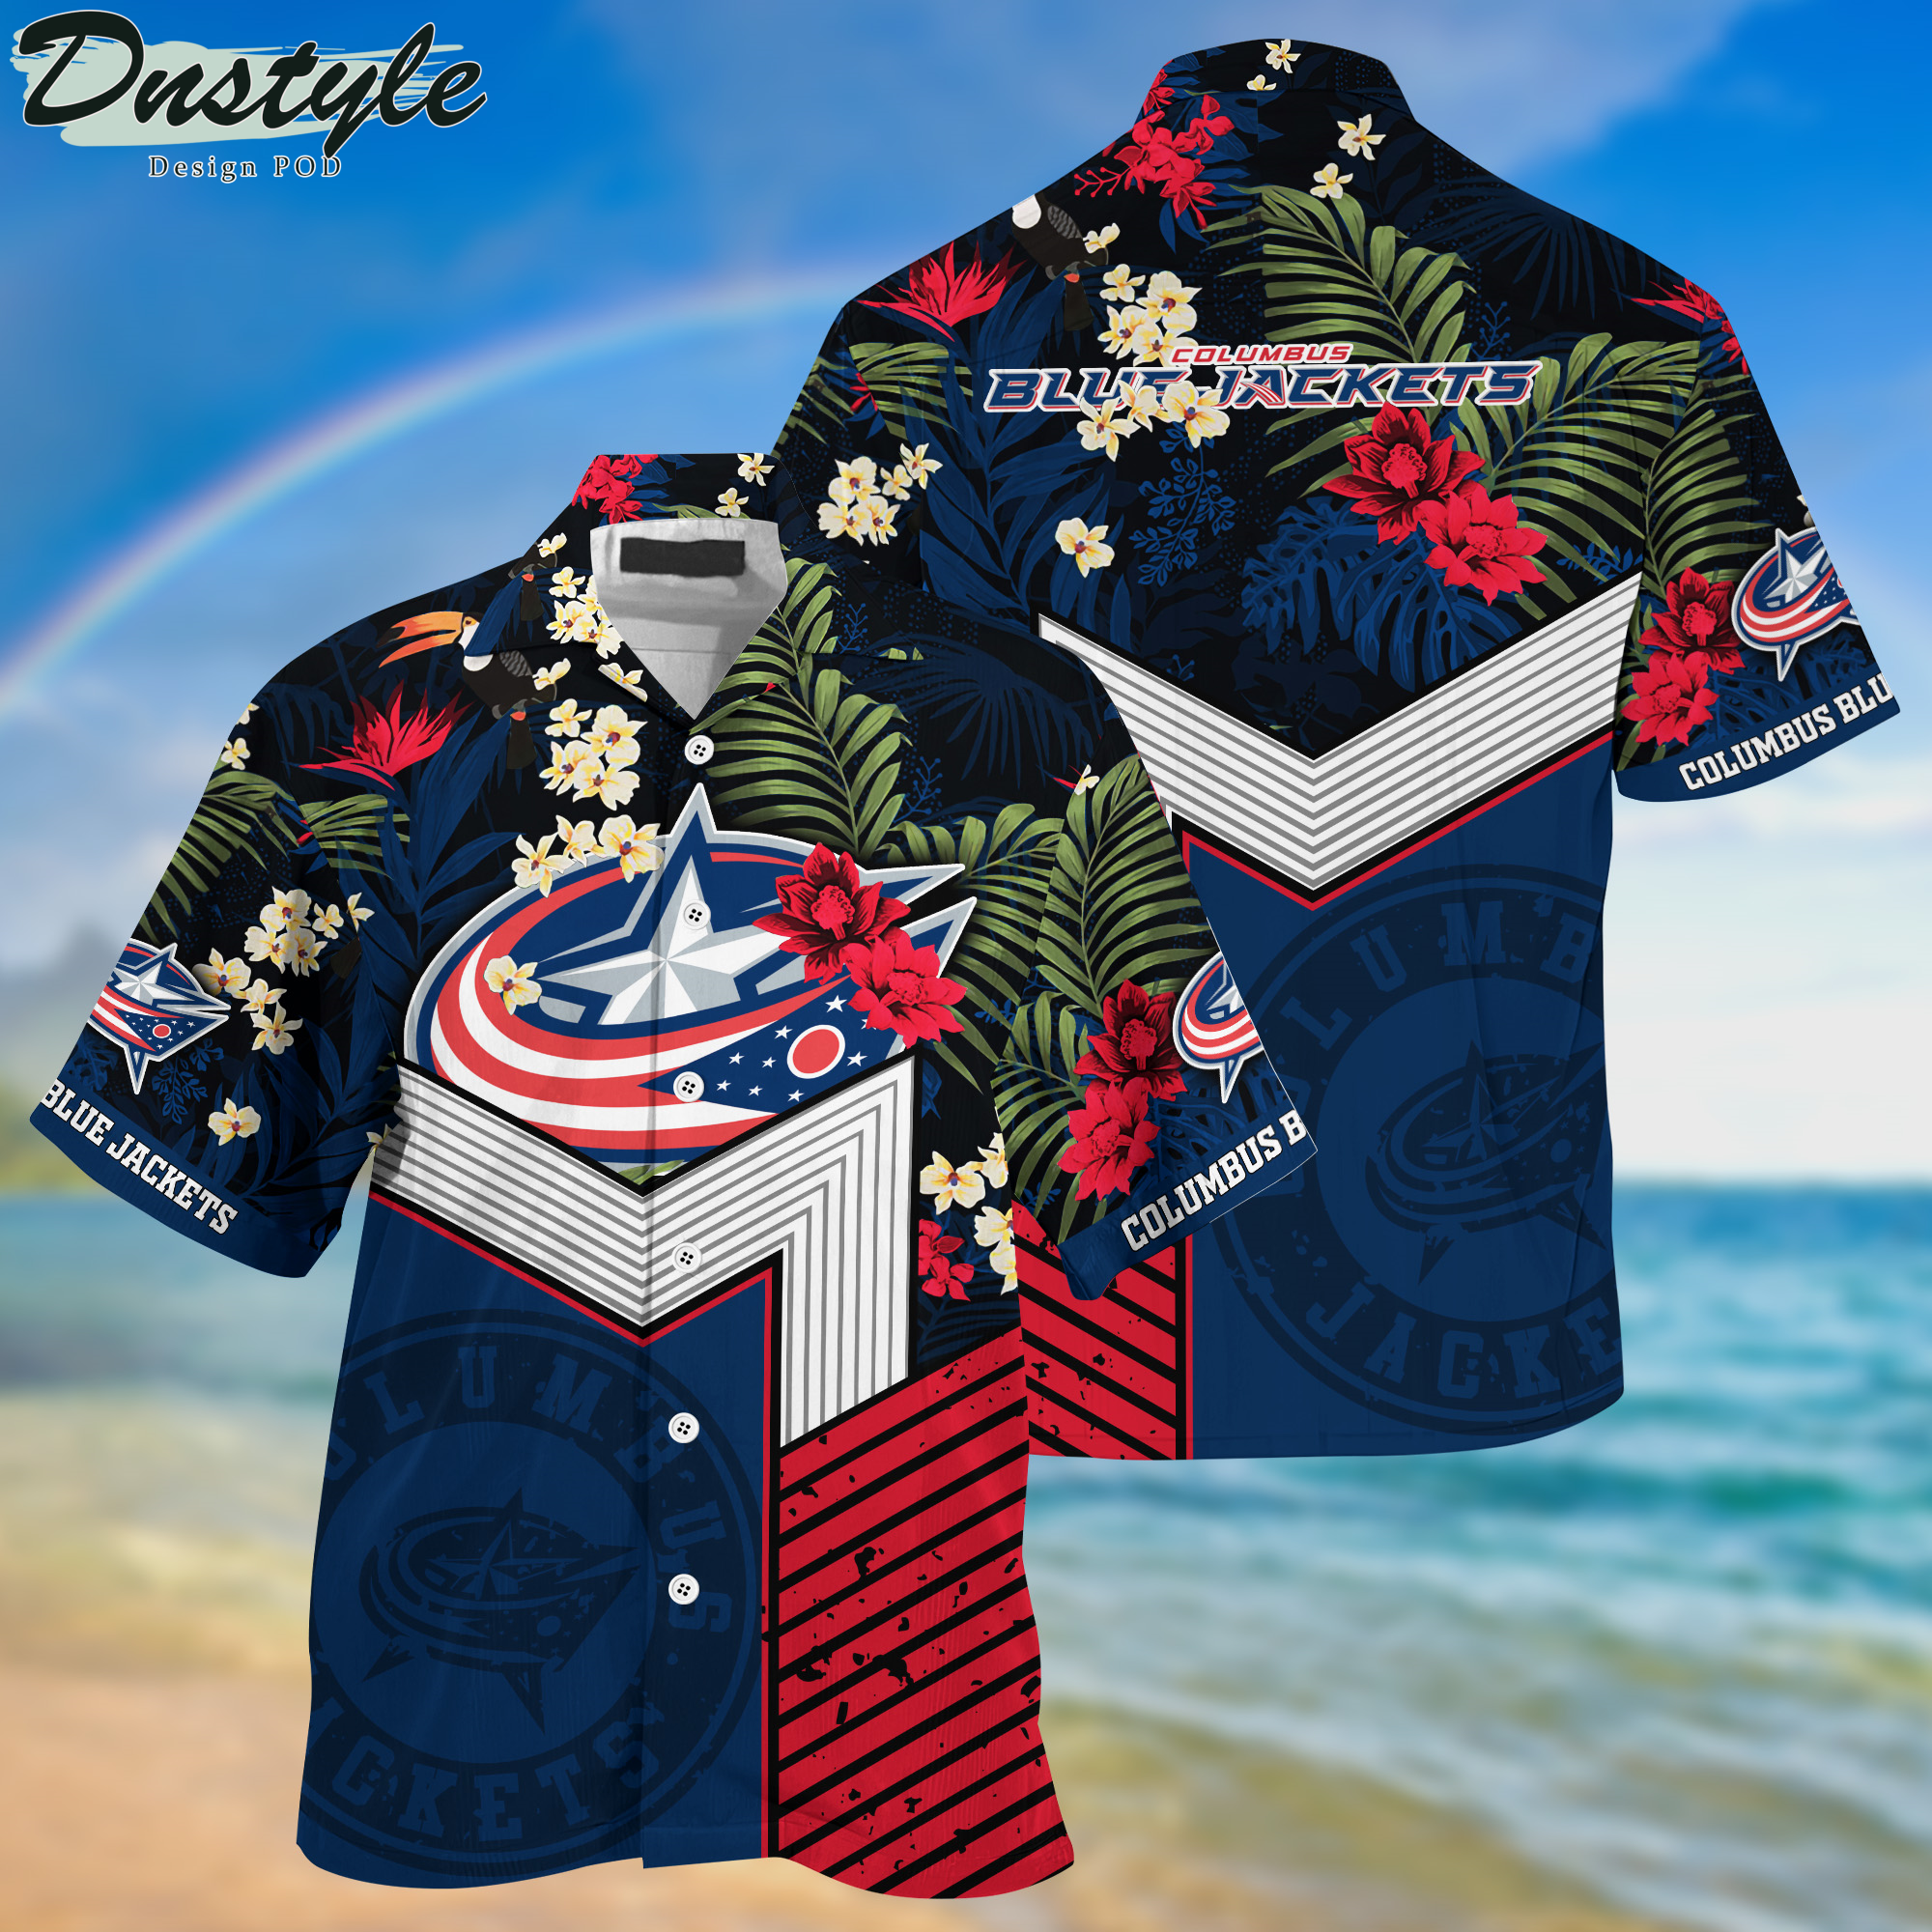 Columbus Blue Jackets Hawaii Shirt And Shorts New Collection